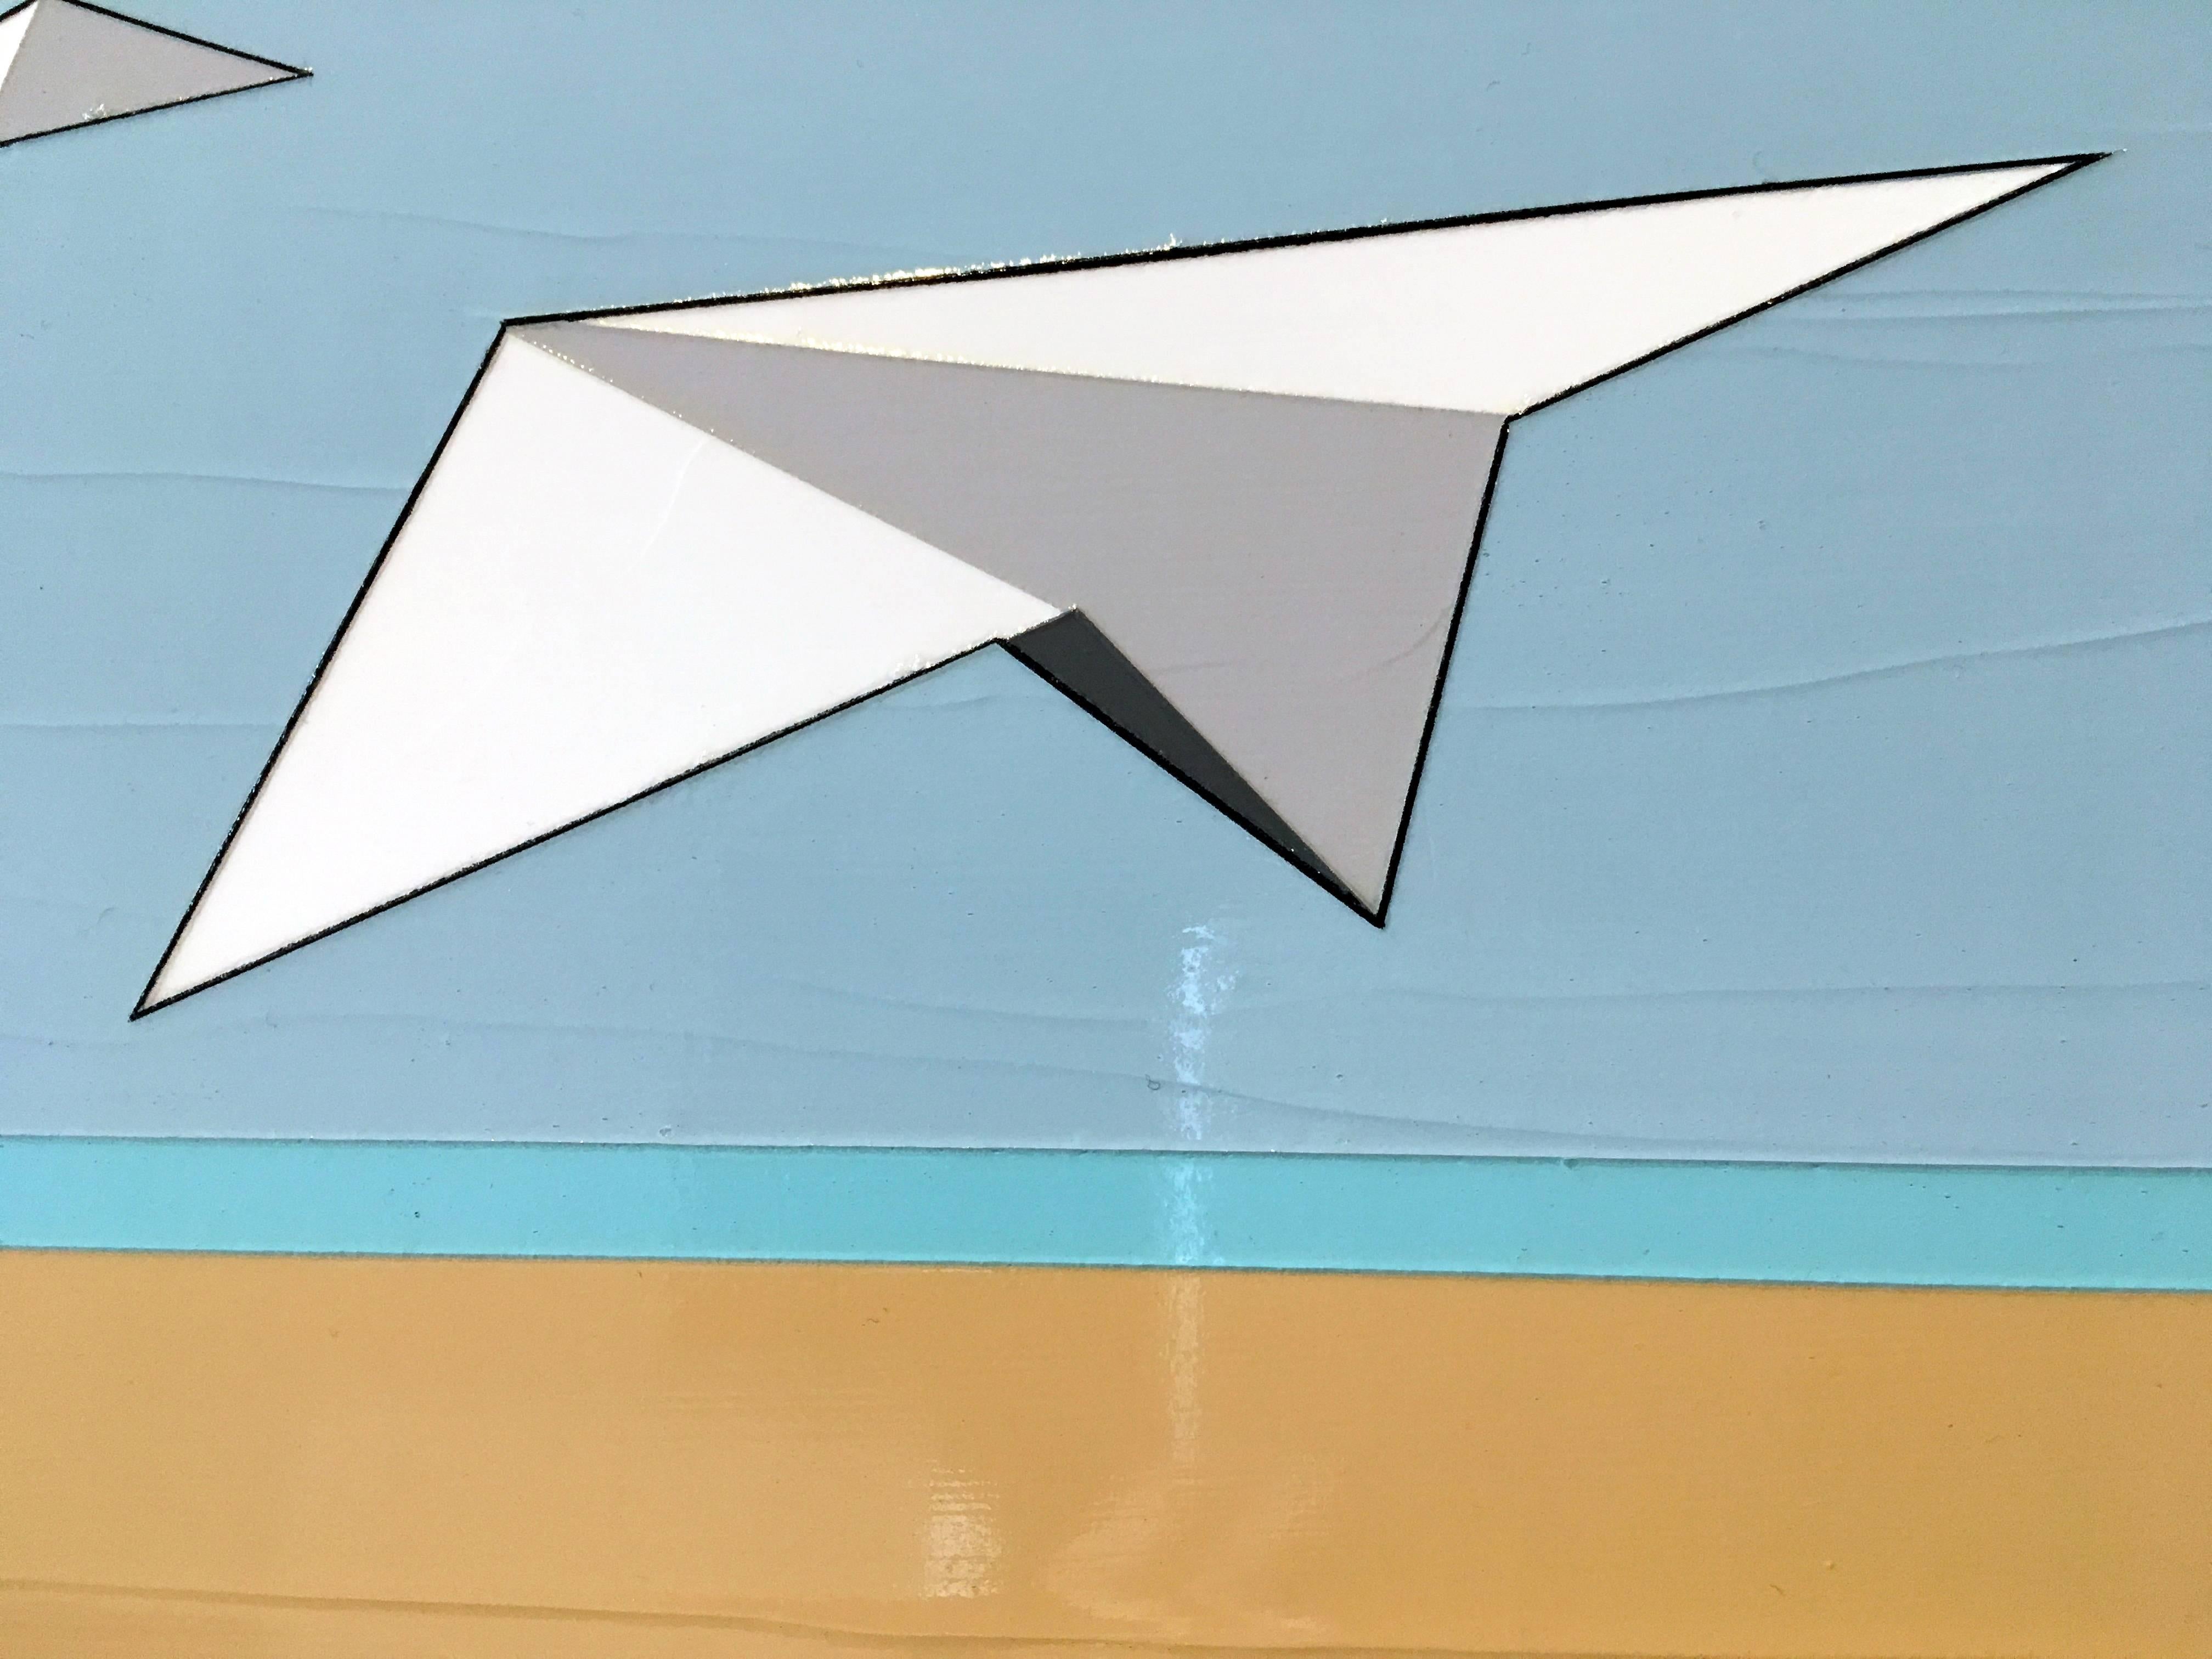 Away We Go est une peinture à l'huile et à l'acrylique à la texture épaisse représentant trois avions en papier qui s'envolent comme des oiseaux.  Il s'agit d'une œuvre de l'artiste hawaïen Jason Wright.

Jason Wright est né aux États-Unis (1975). 